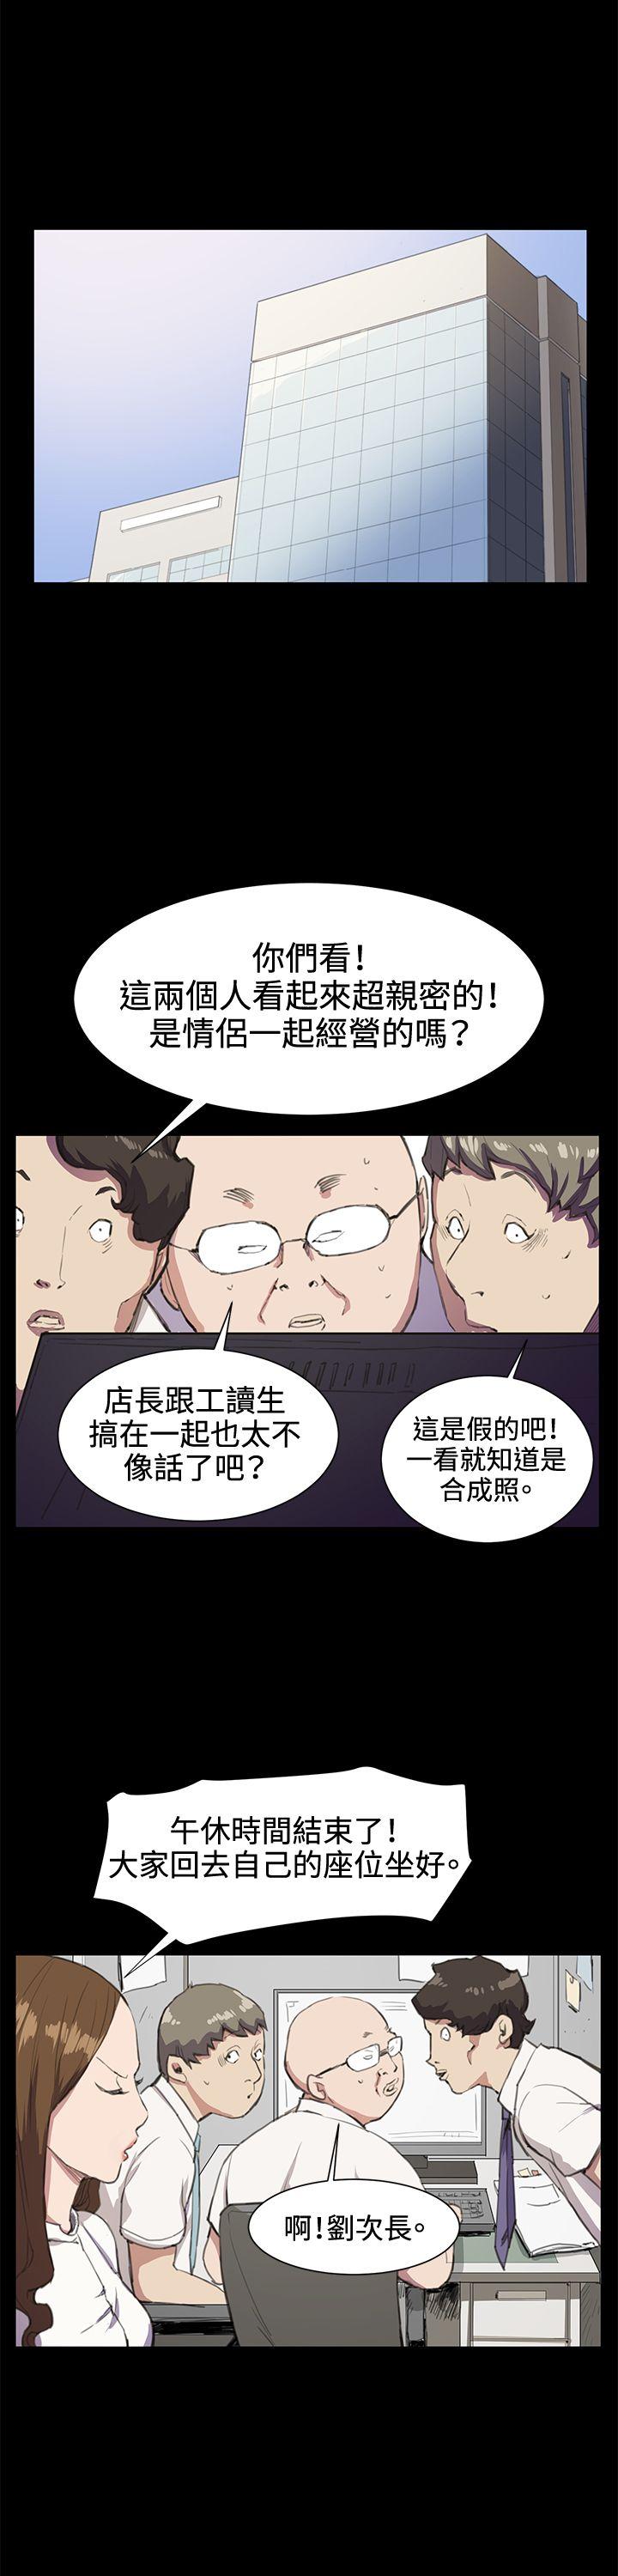 韩国污漫画 深夜便利店 第18话 4